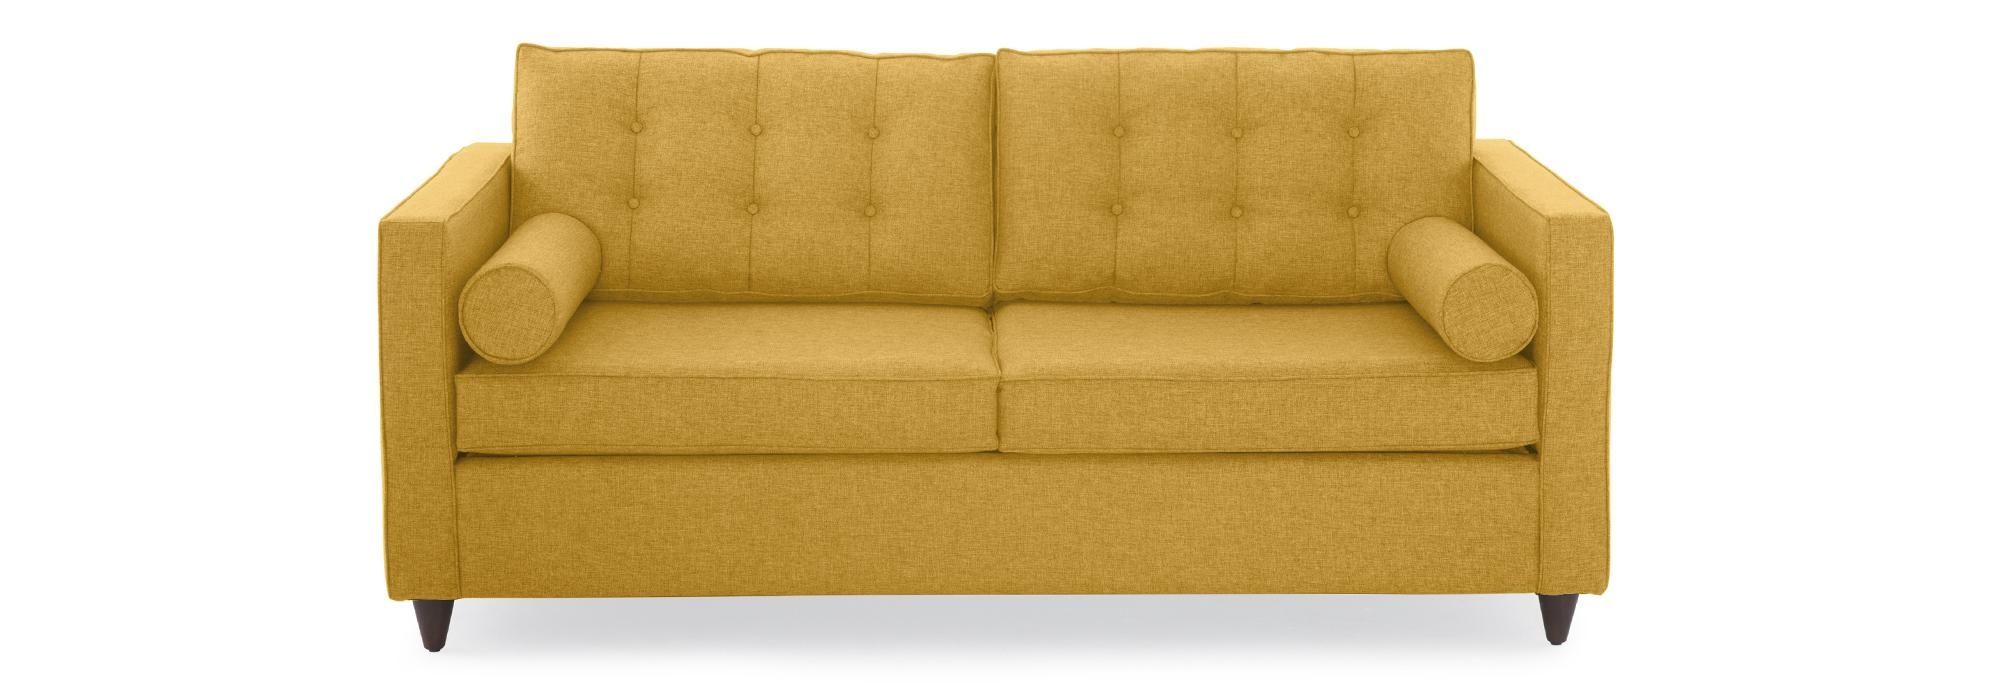 Braxton Sleeper Sofa | Joybird With Braxton Sofas (View 14 of 20)